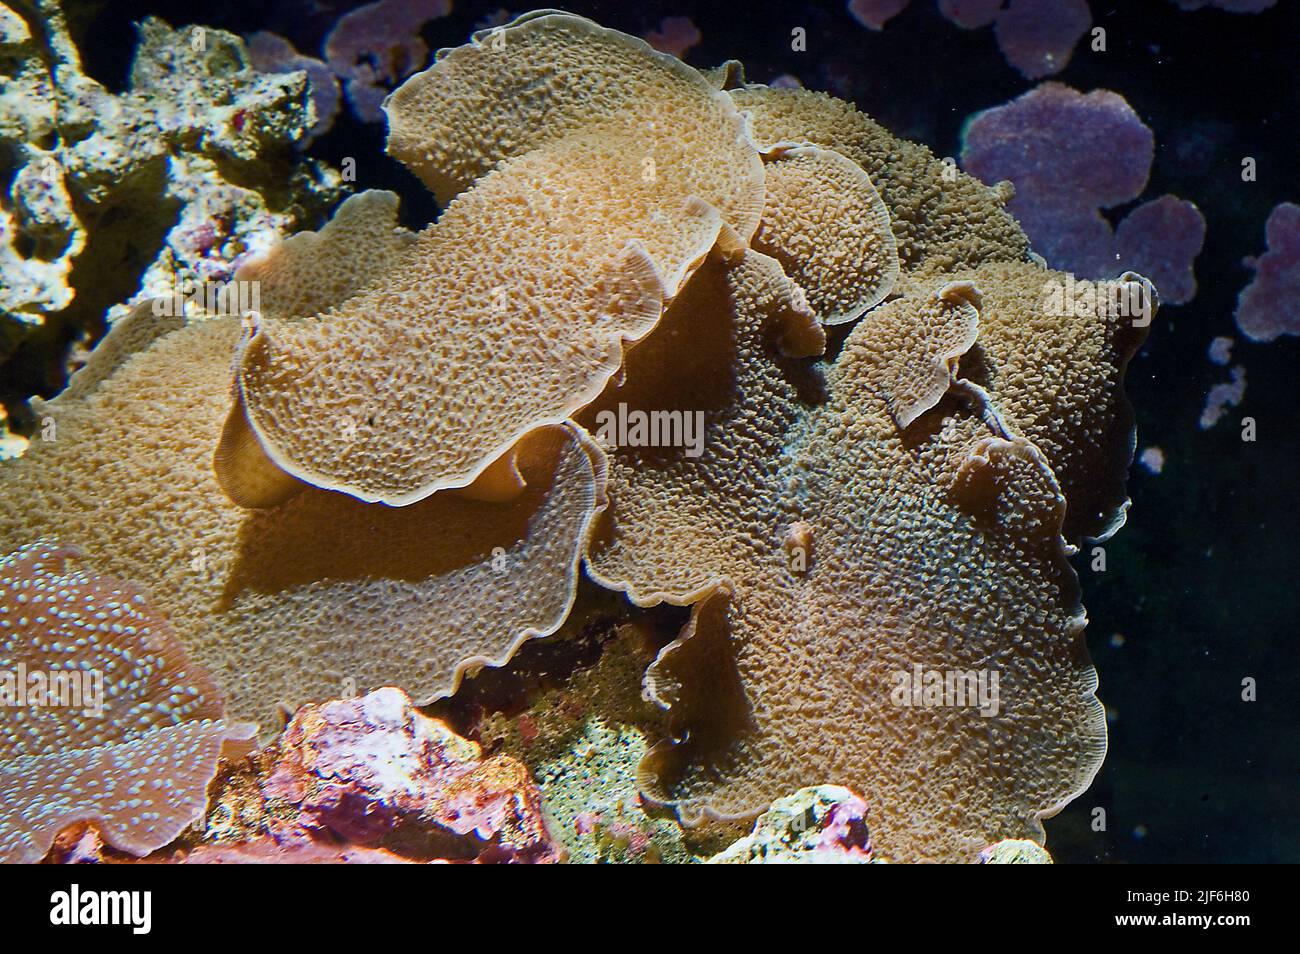 Kolonie von Hairy Mushroom Anemone oder indonesisches Elefantenohr, Rhodactis cf. Indosinensis. Stockfoto